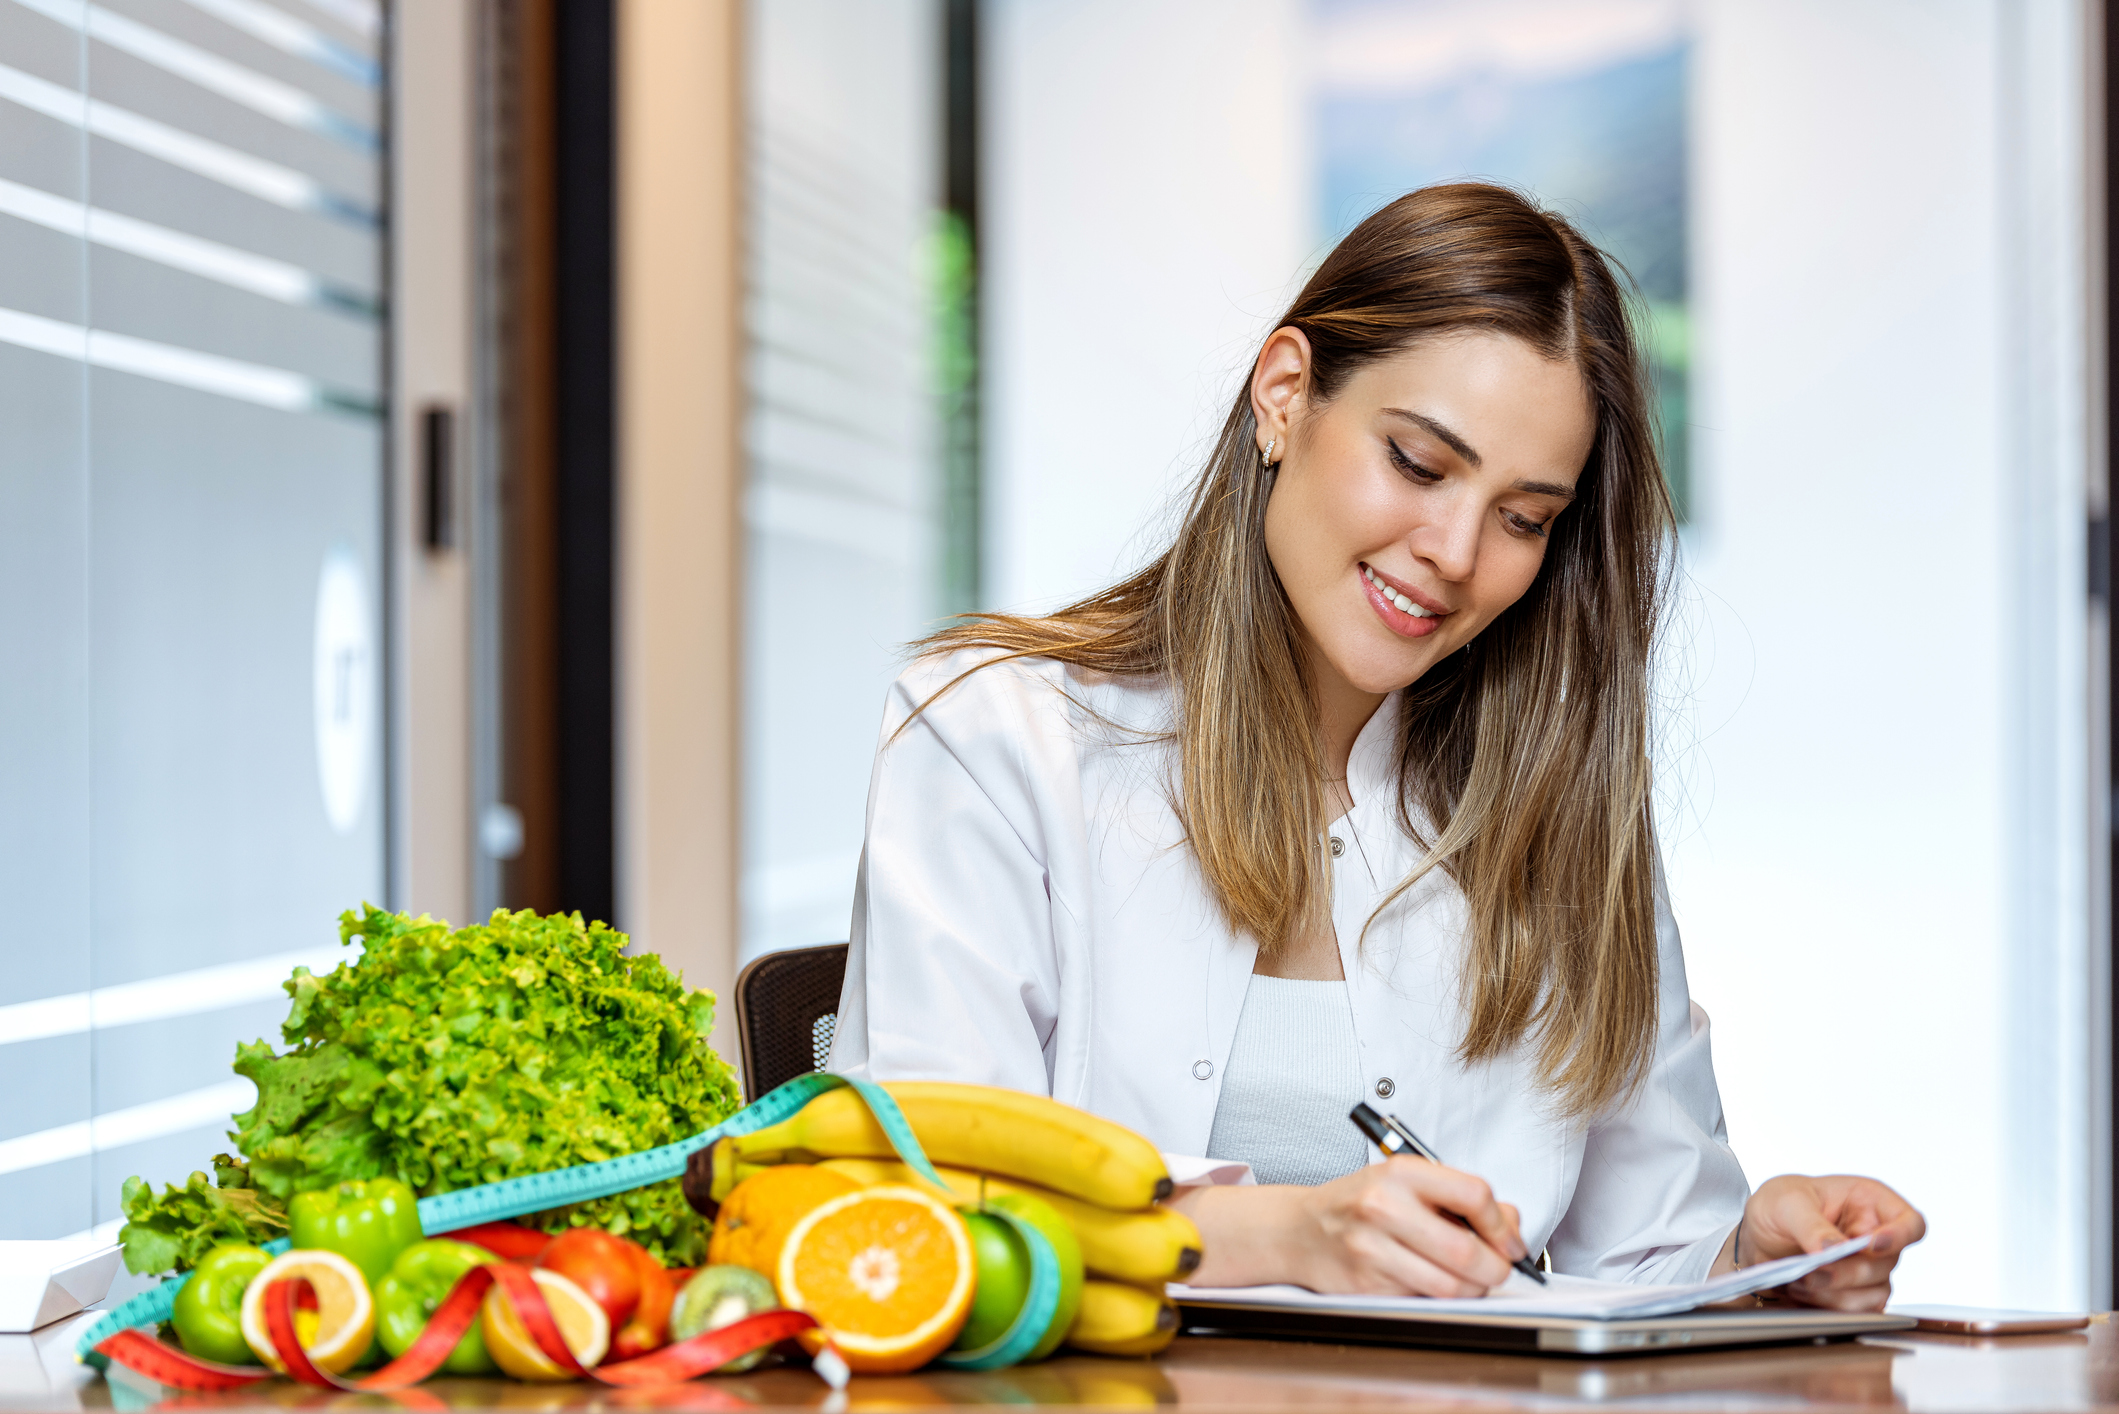 Nutricionista sonriente en su consultorio, ella muestra frutas y verduras saludables.